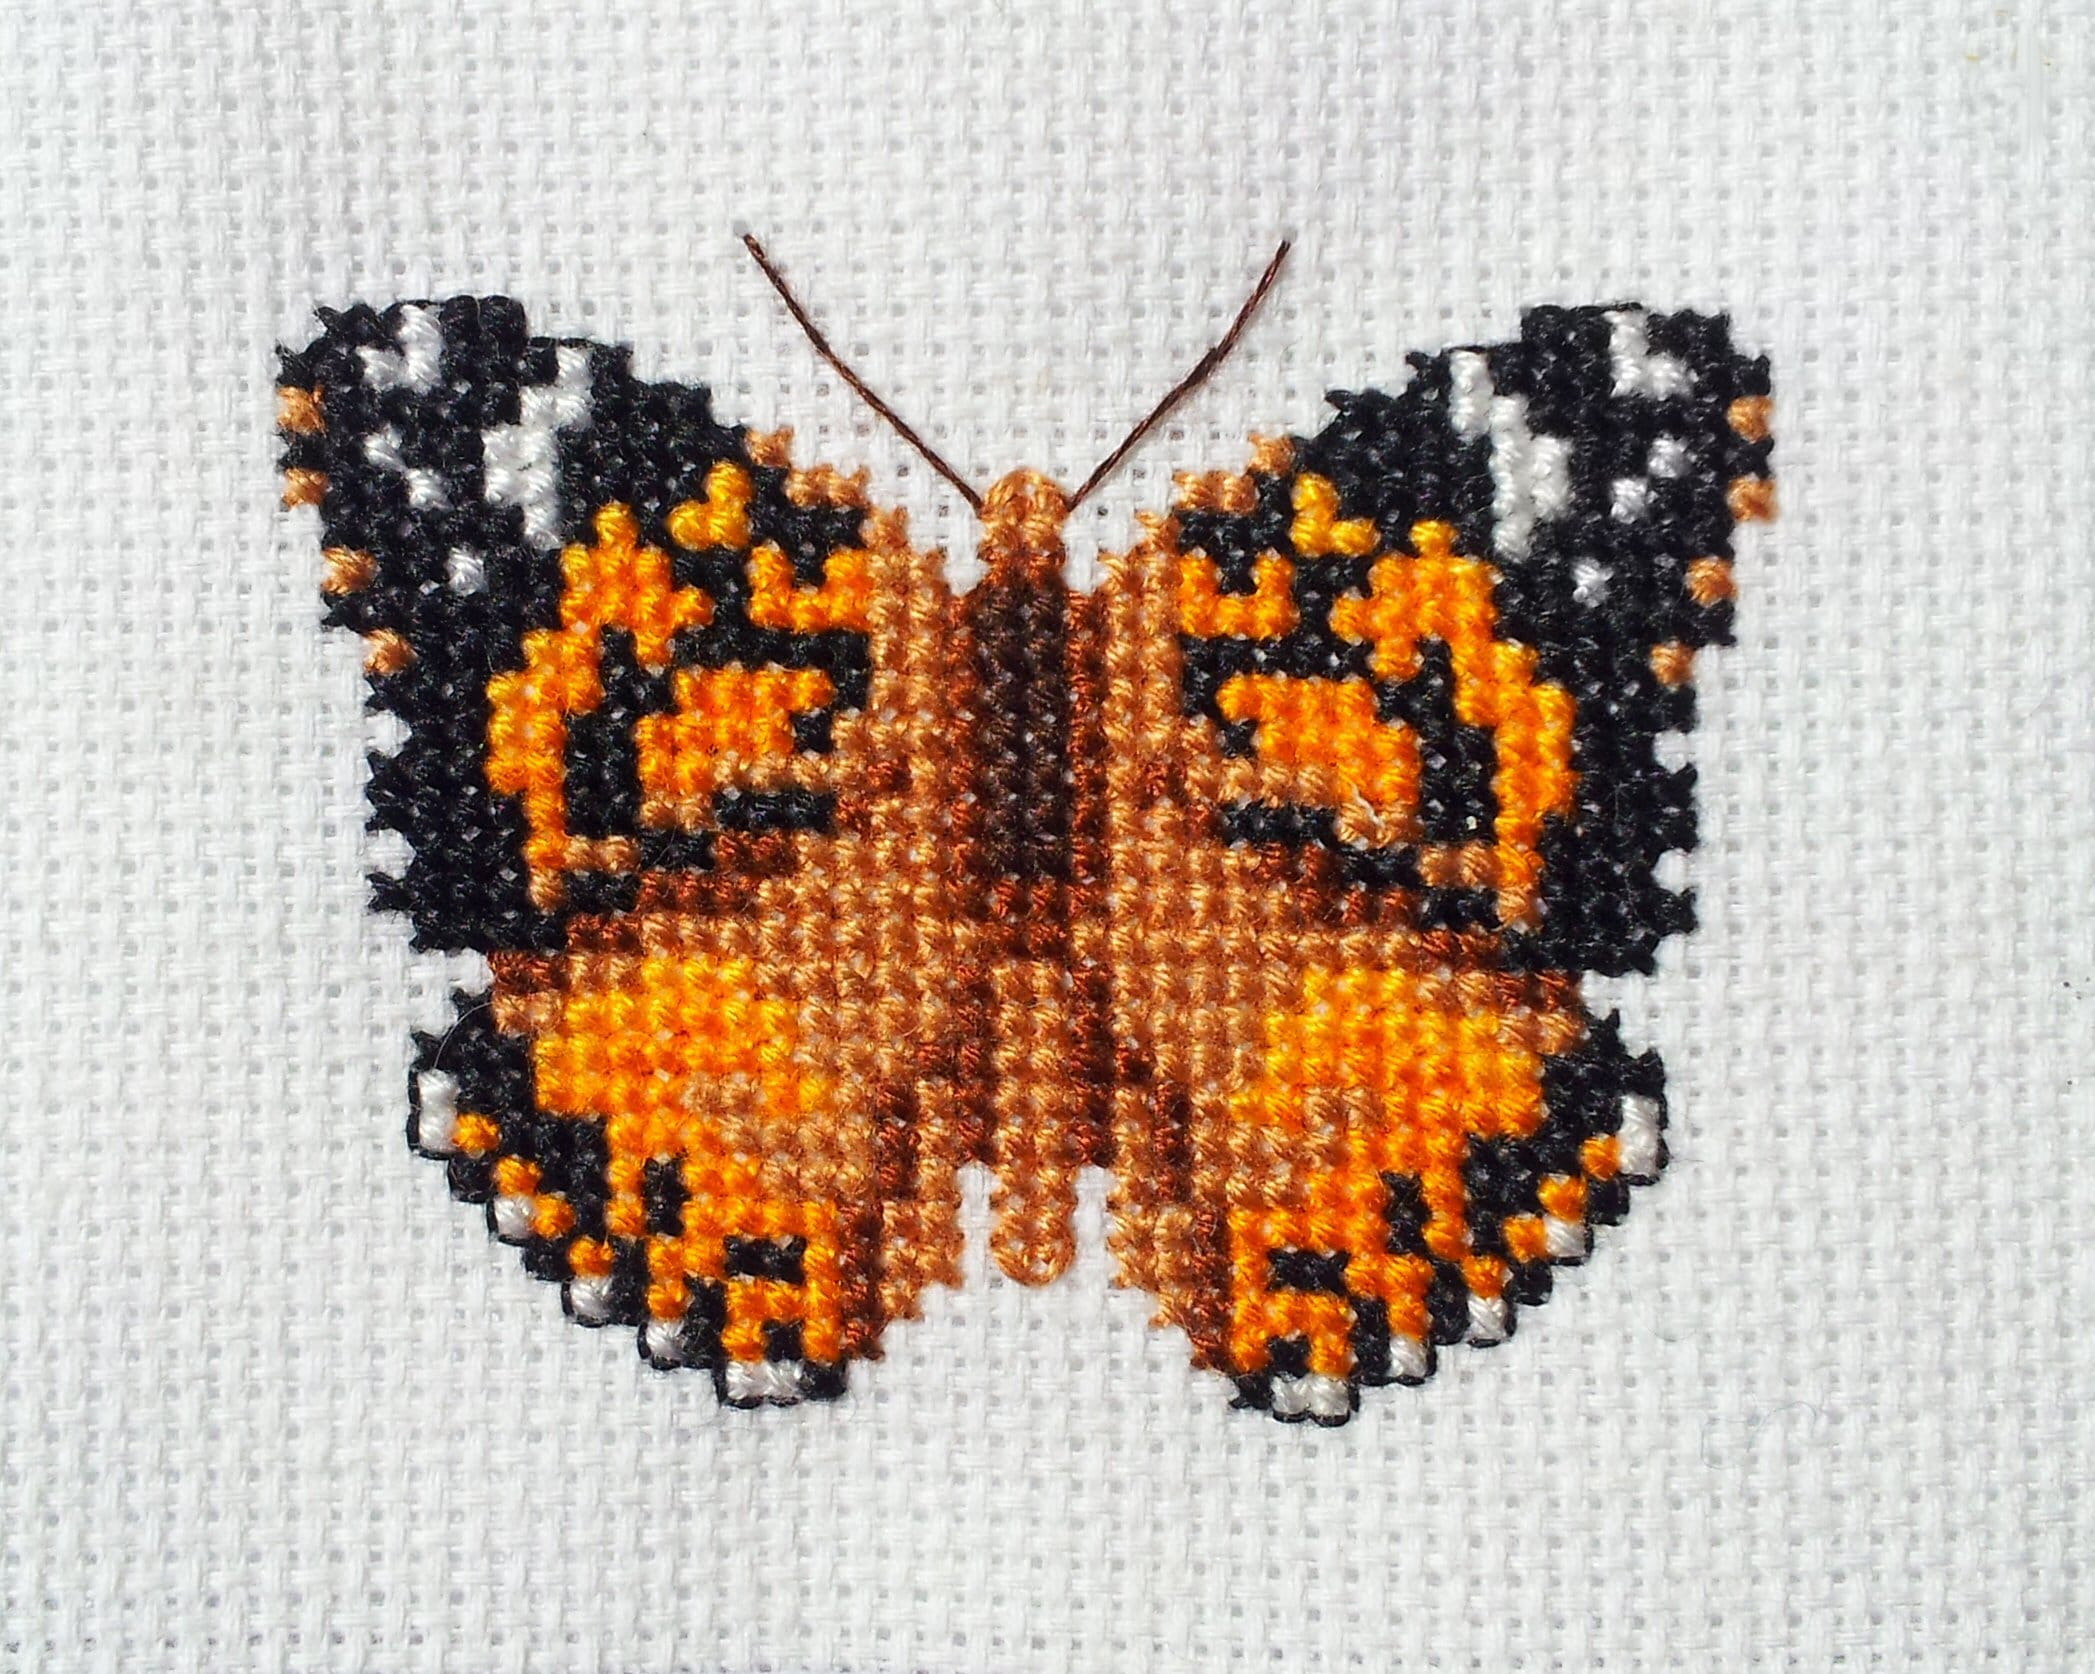 Kid Stitch - Checky Butterfly